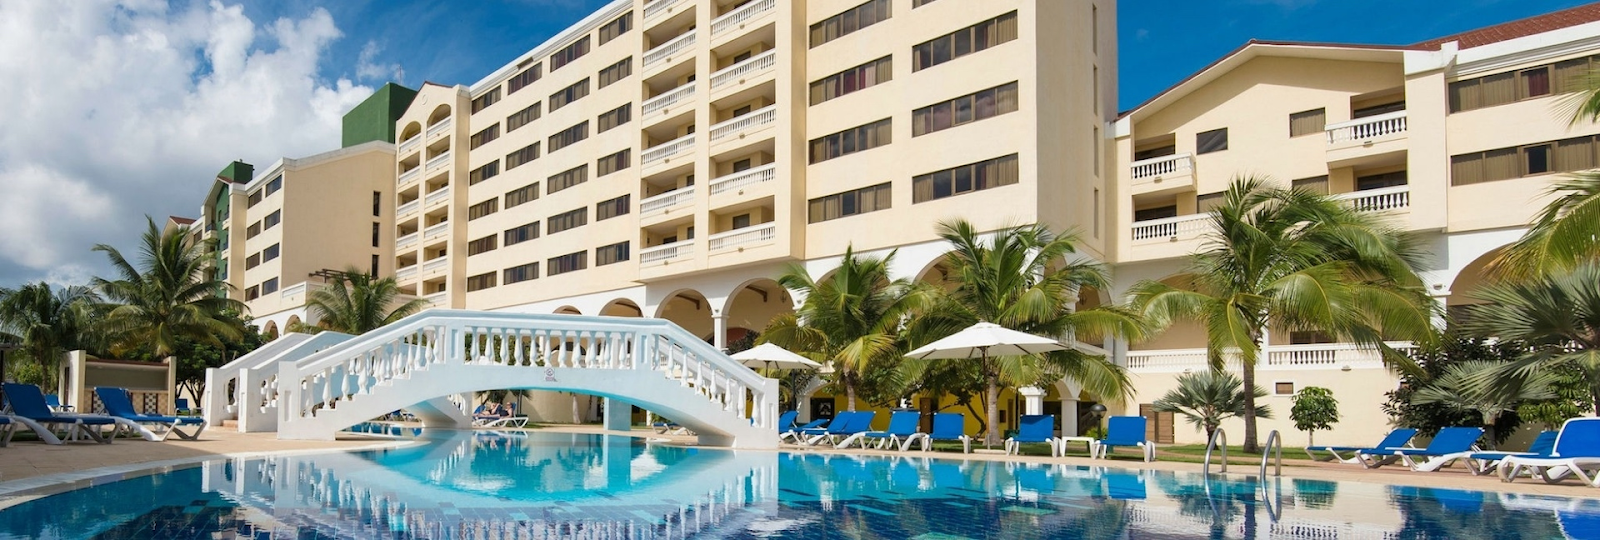 Best Family Resorts In Havana